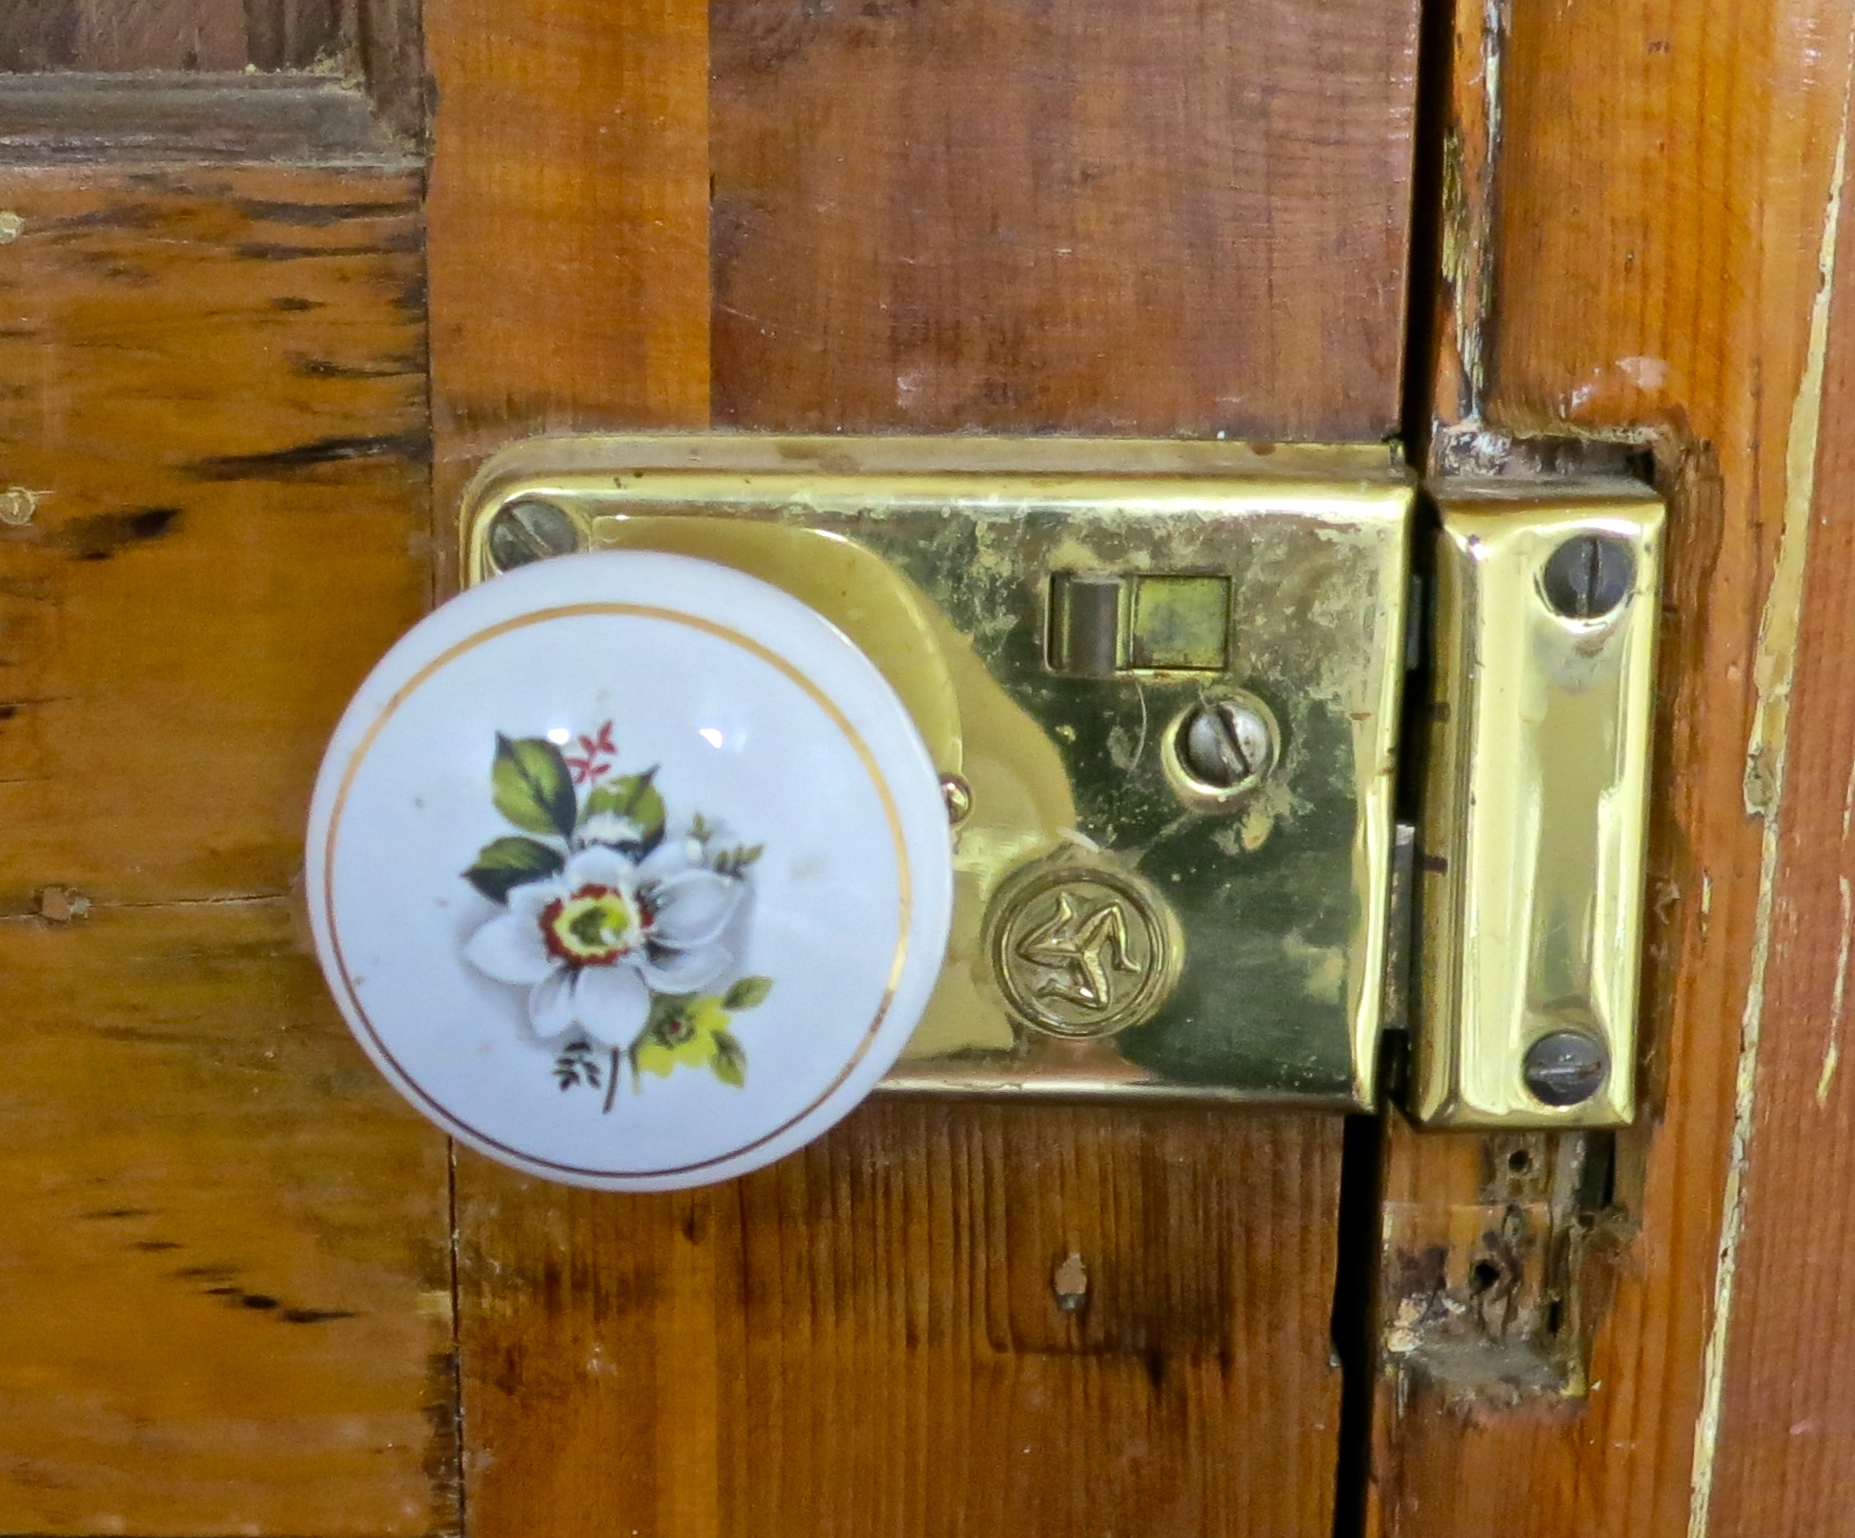 Bathroom door lock